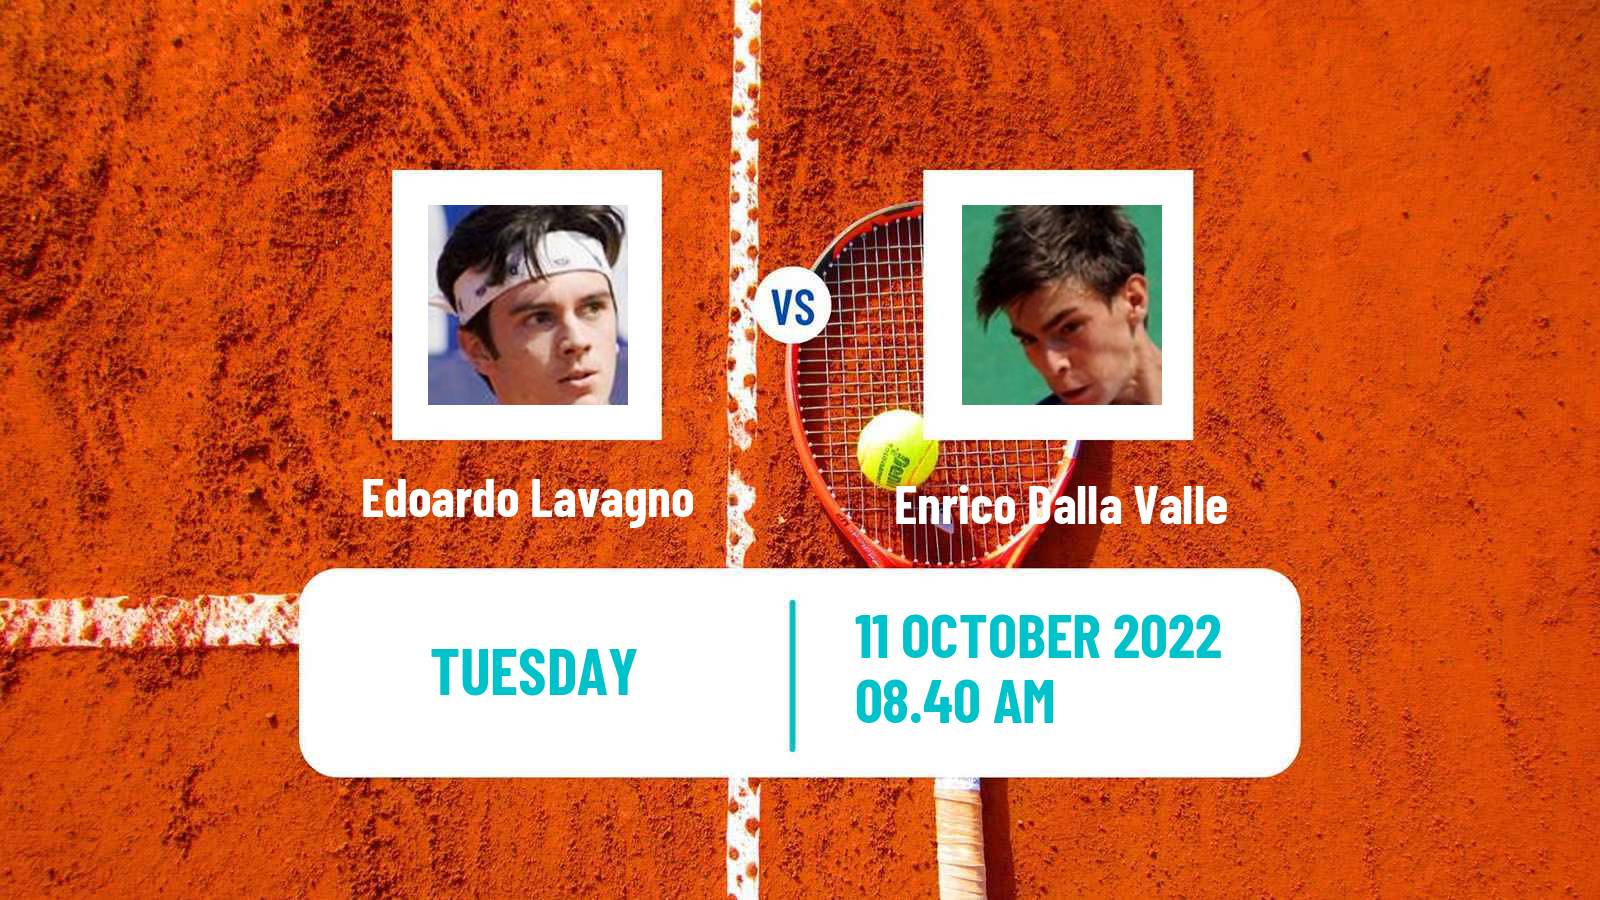 Tennis ITF Tournaments Edoardo Lavagno - Enrico Dalla Valle